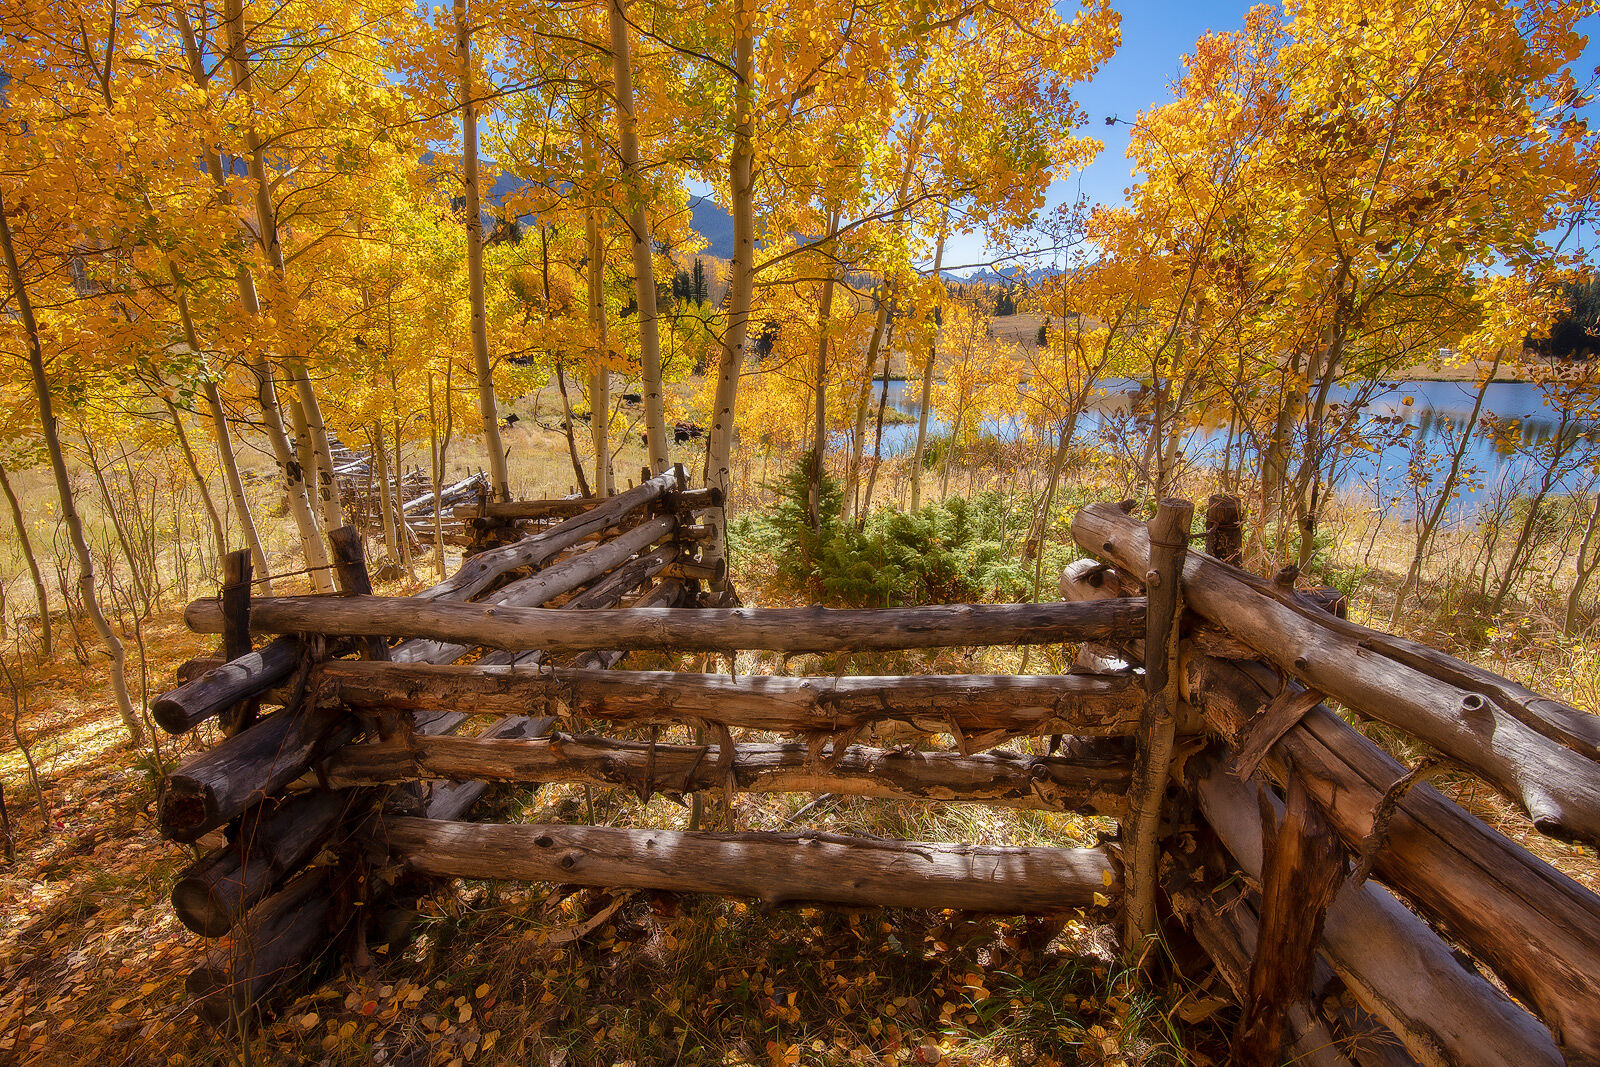 An old, zig-zag wooden fence weaves between golden aspen trees alongside a lake.